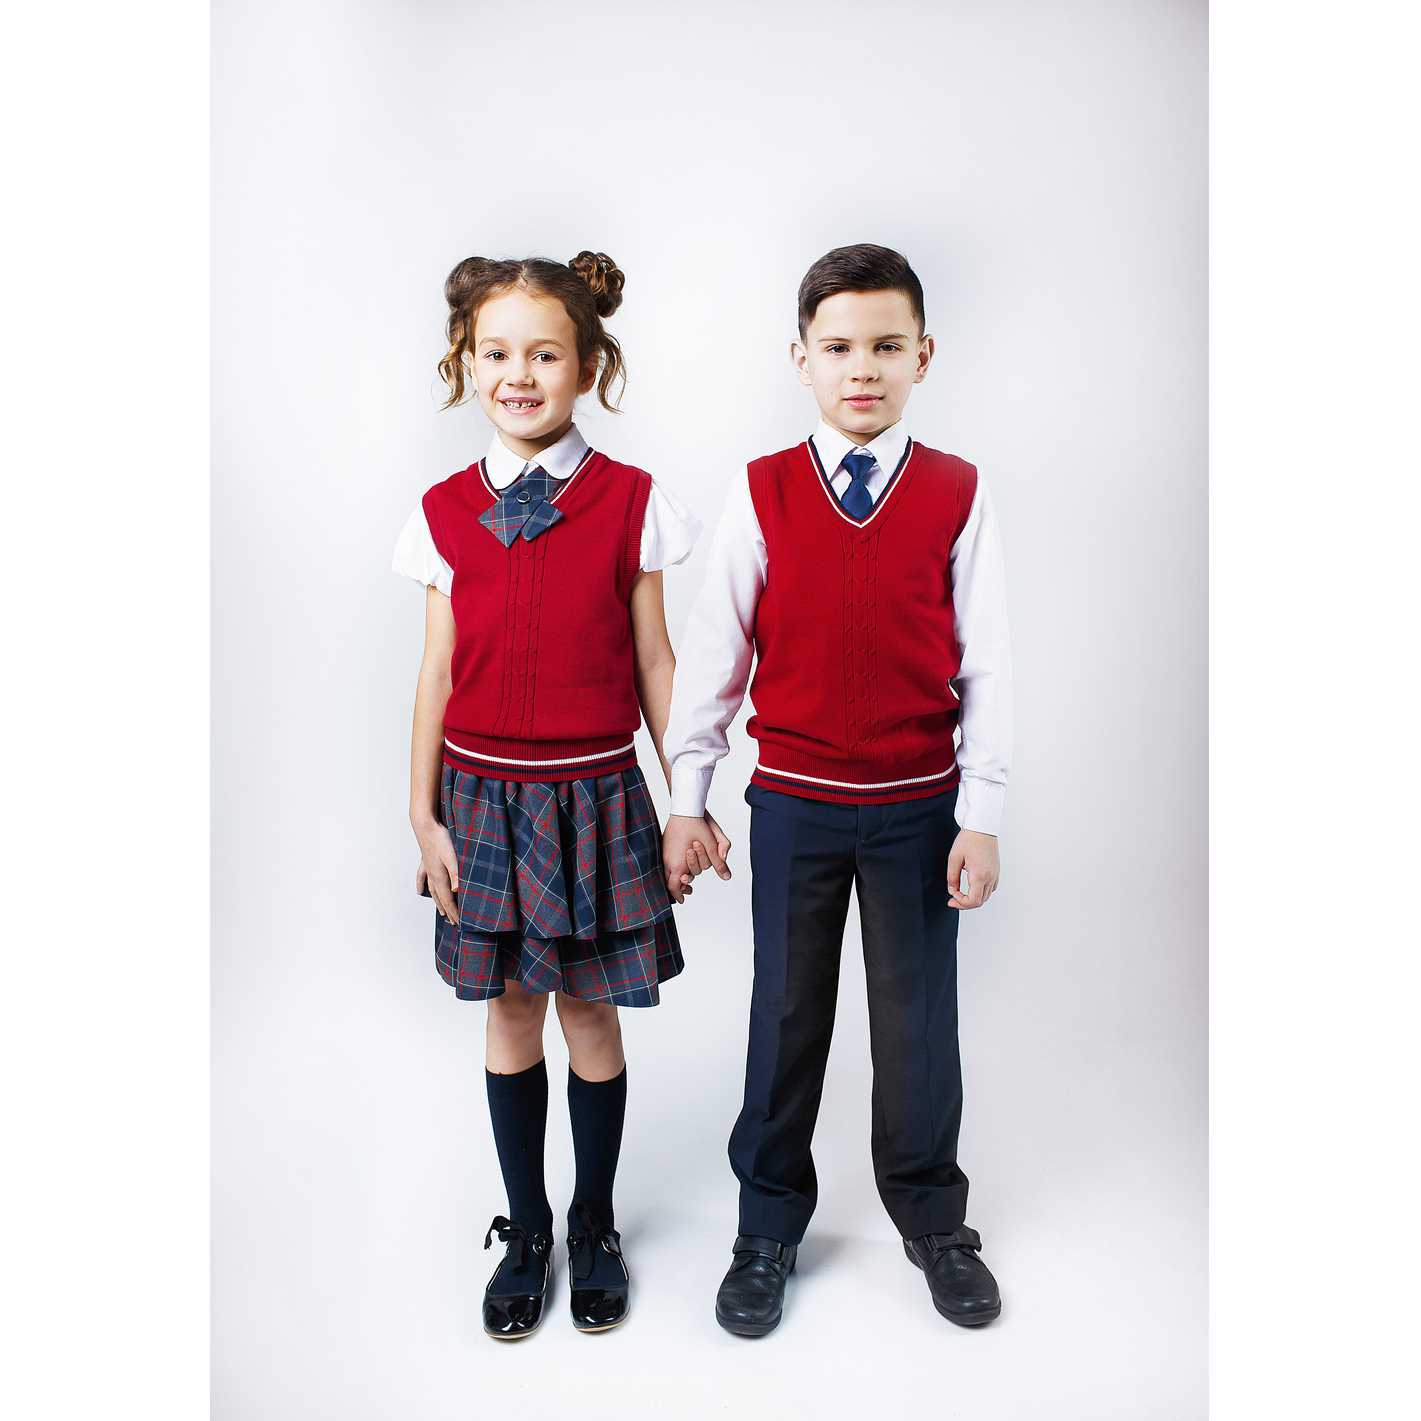 Школьная форма 2020-2021: 100 модных образов на фото Цвет школьной формы 2020-2021 Модные школьные платья, сарафаны, юбки, брюки, аксессуары Школьная форма для девочек и мальчиков в 2020-2021 учебном году